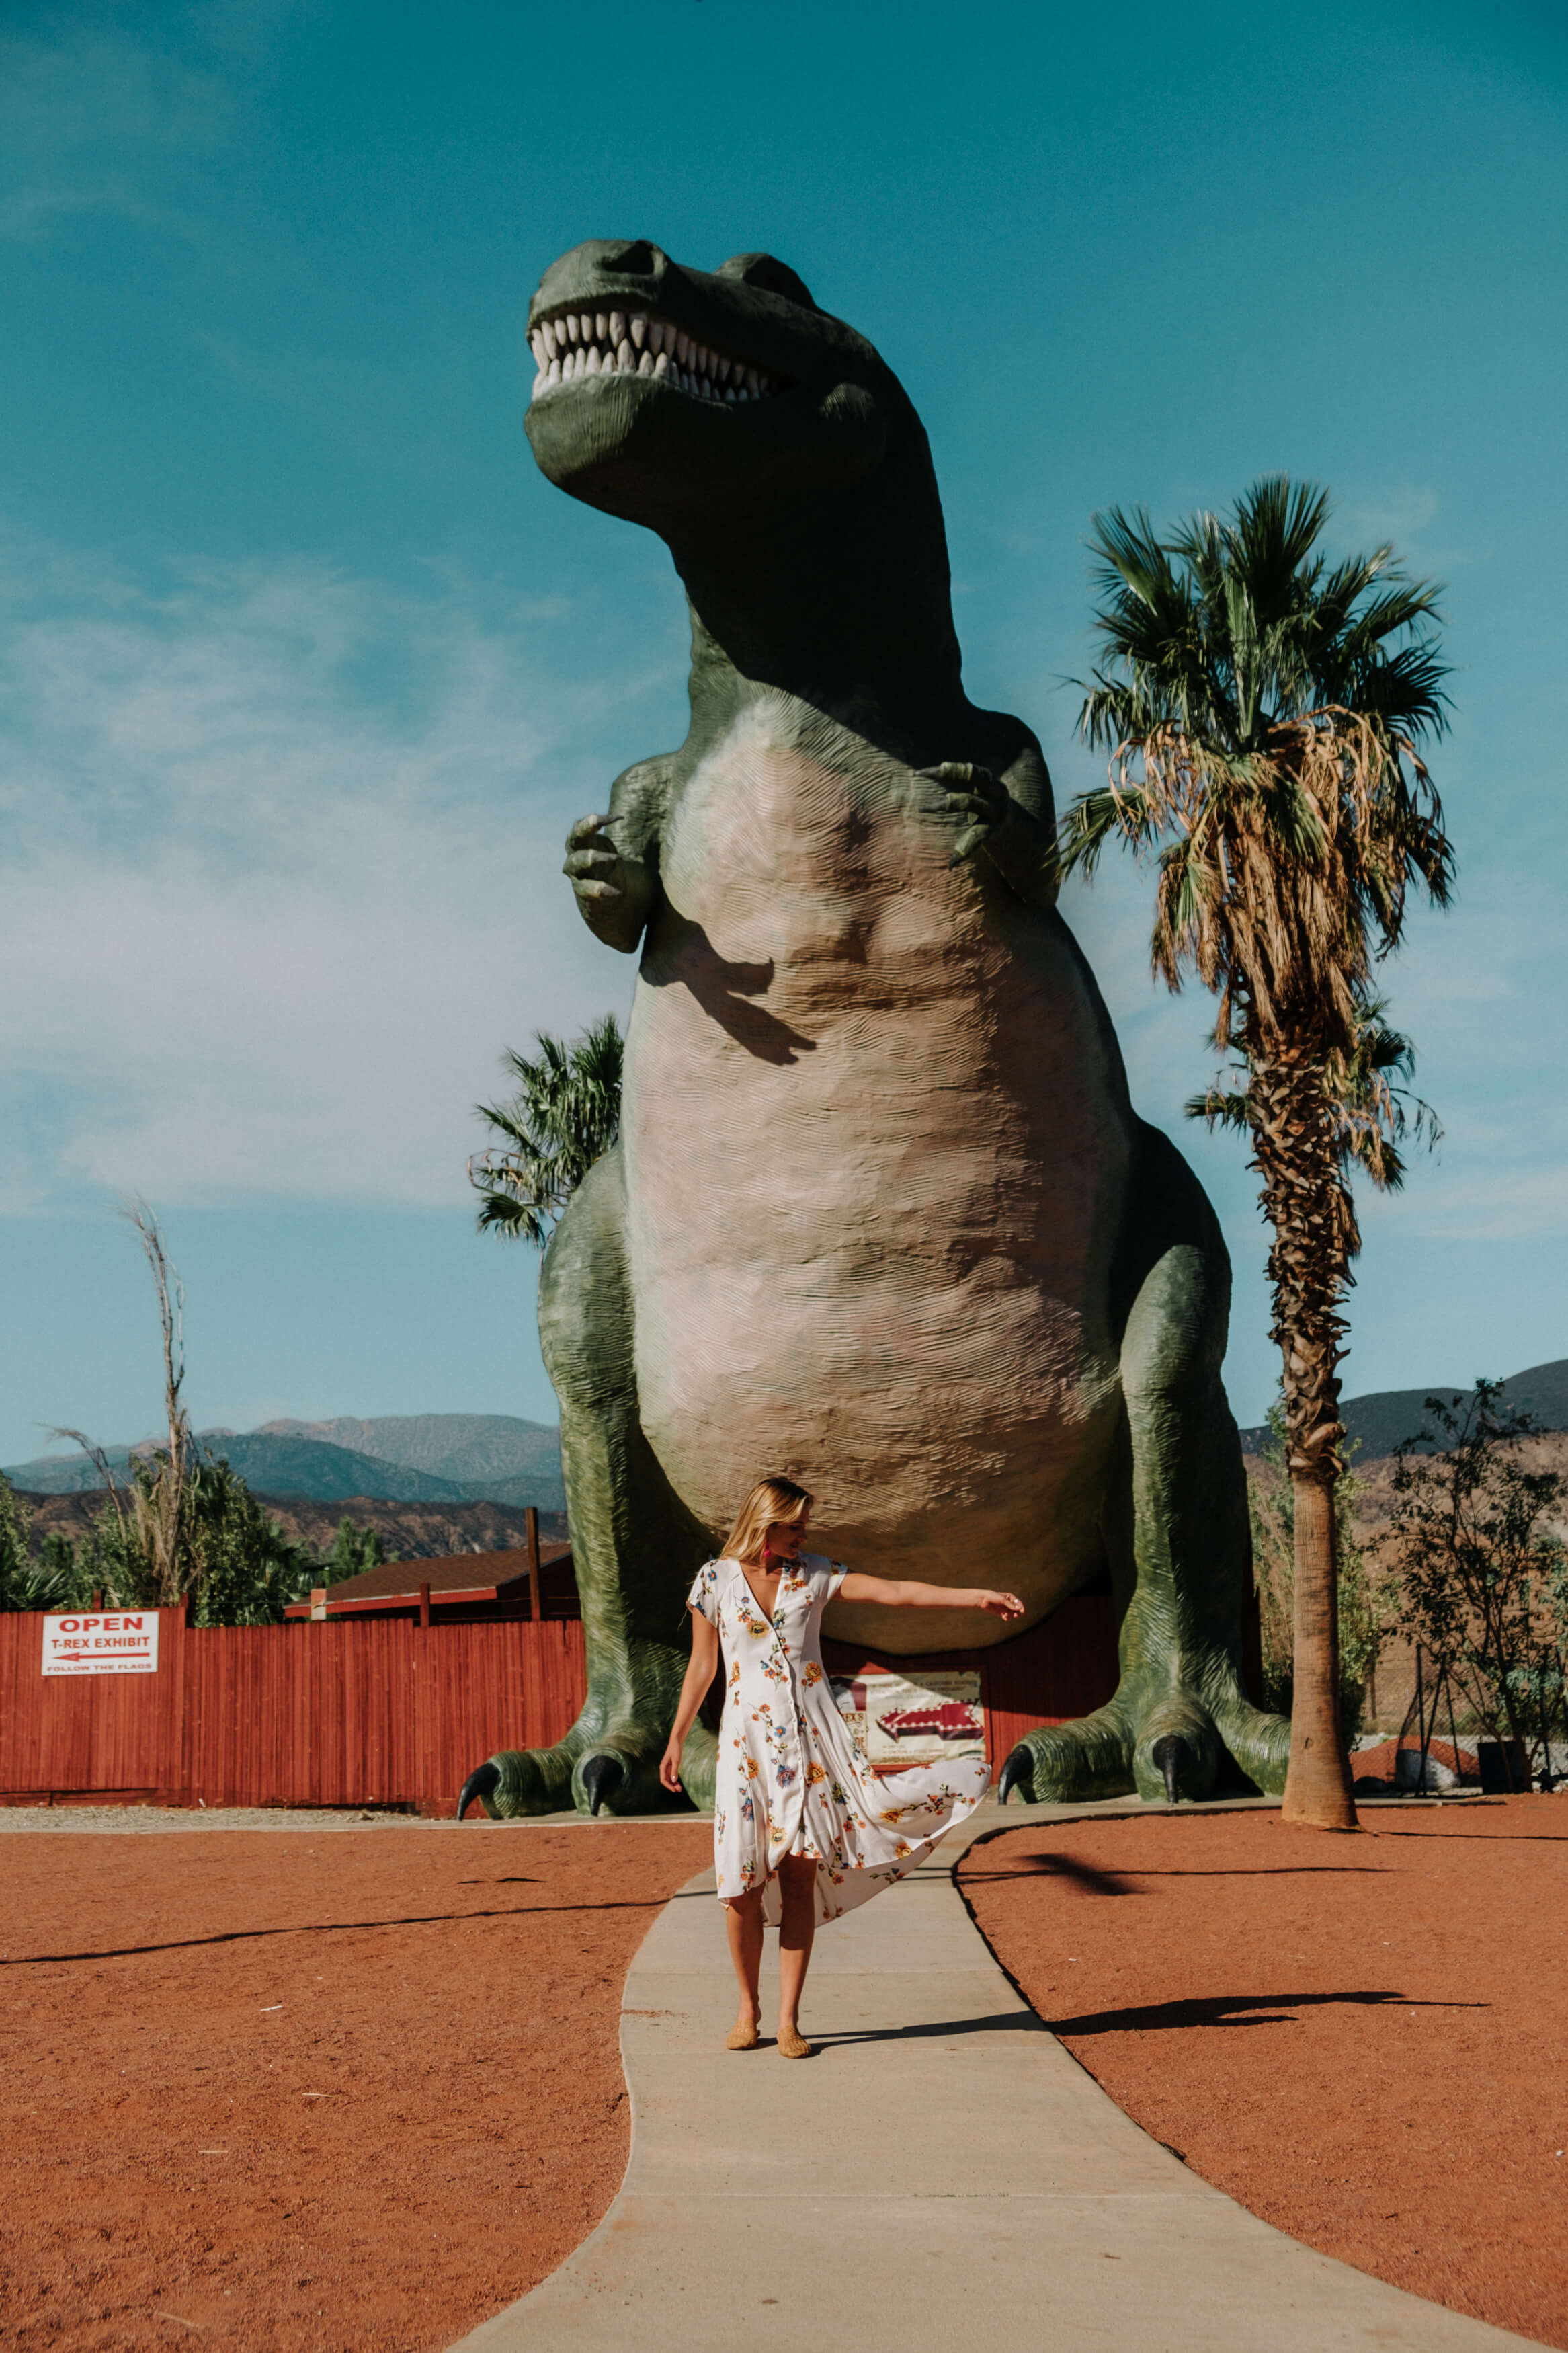 Cabazon Dinosaurs Palm Springs